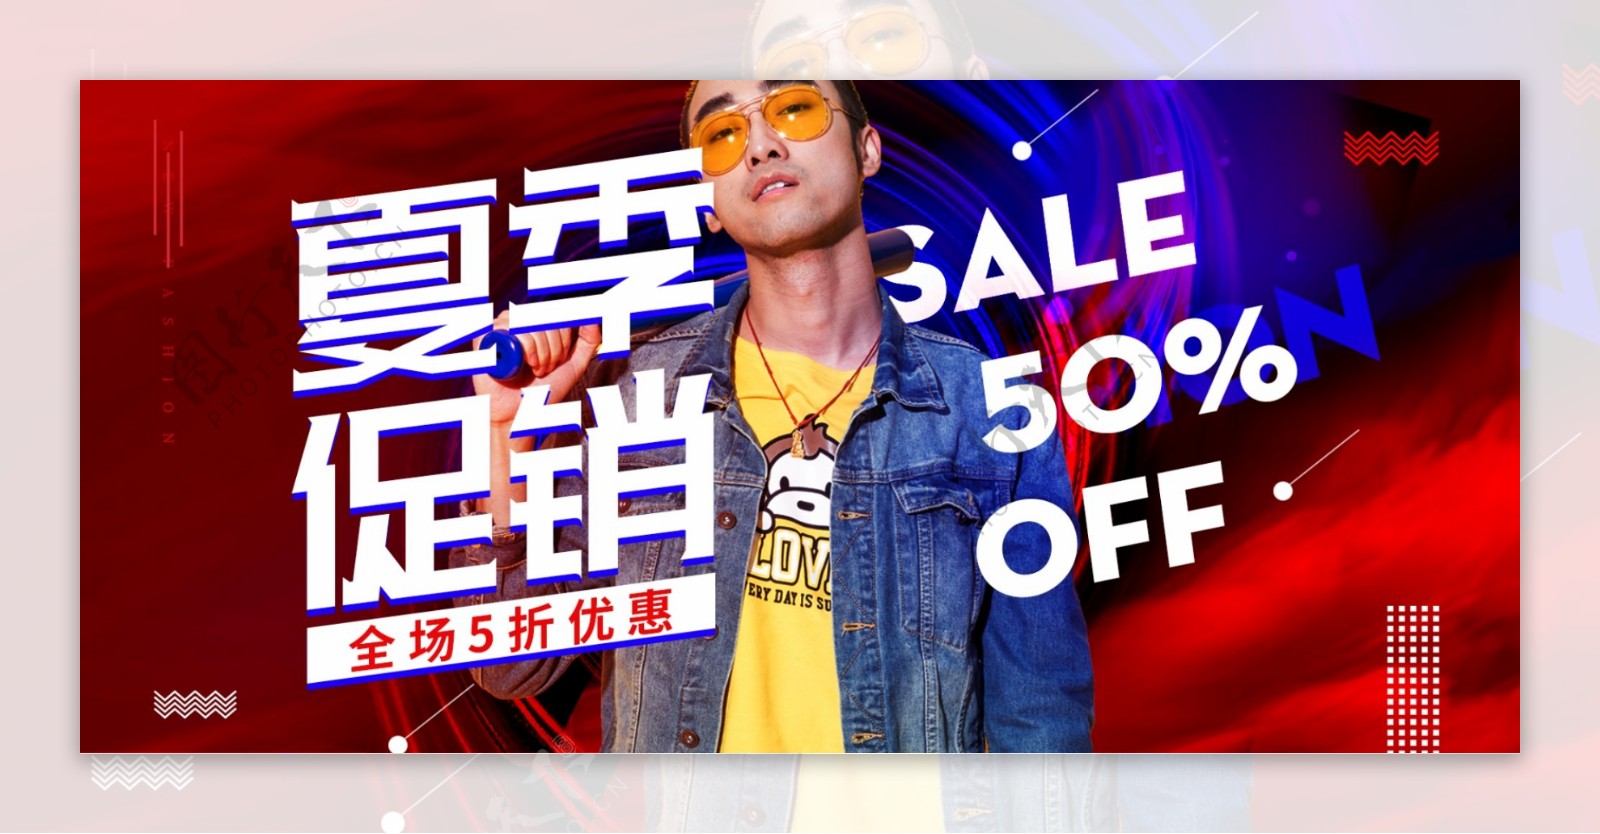 红蓝炫酷潮流夏季促销服装模特男装电商海报